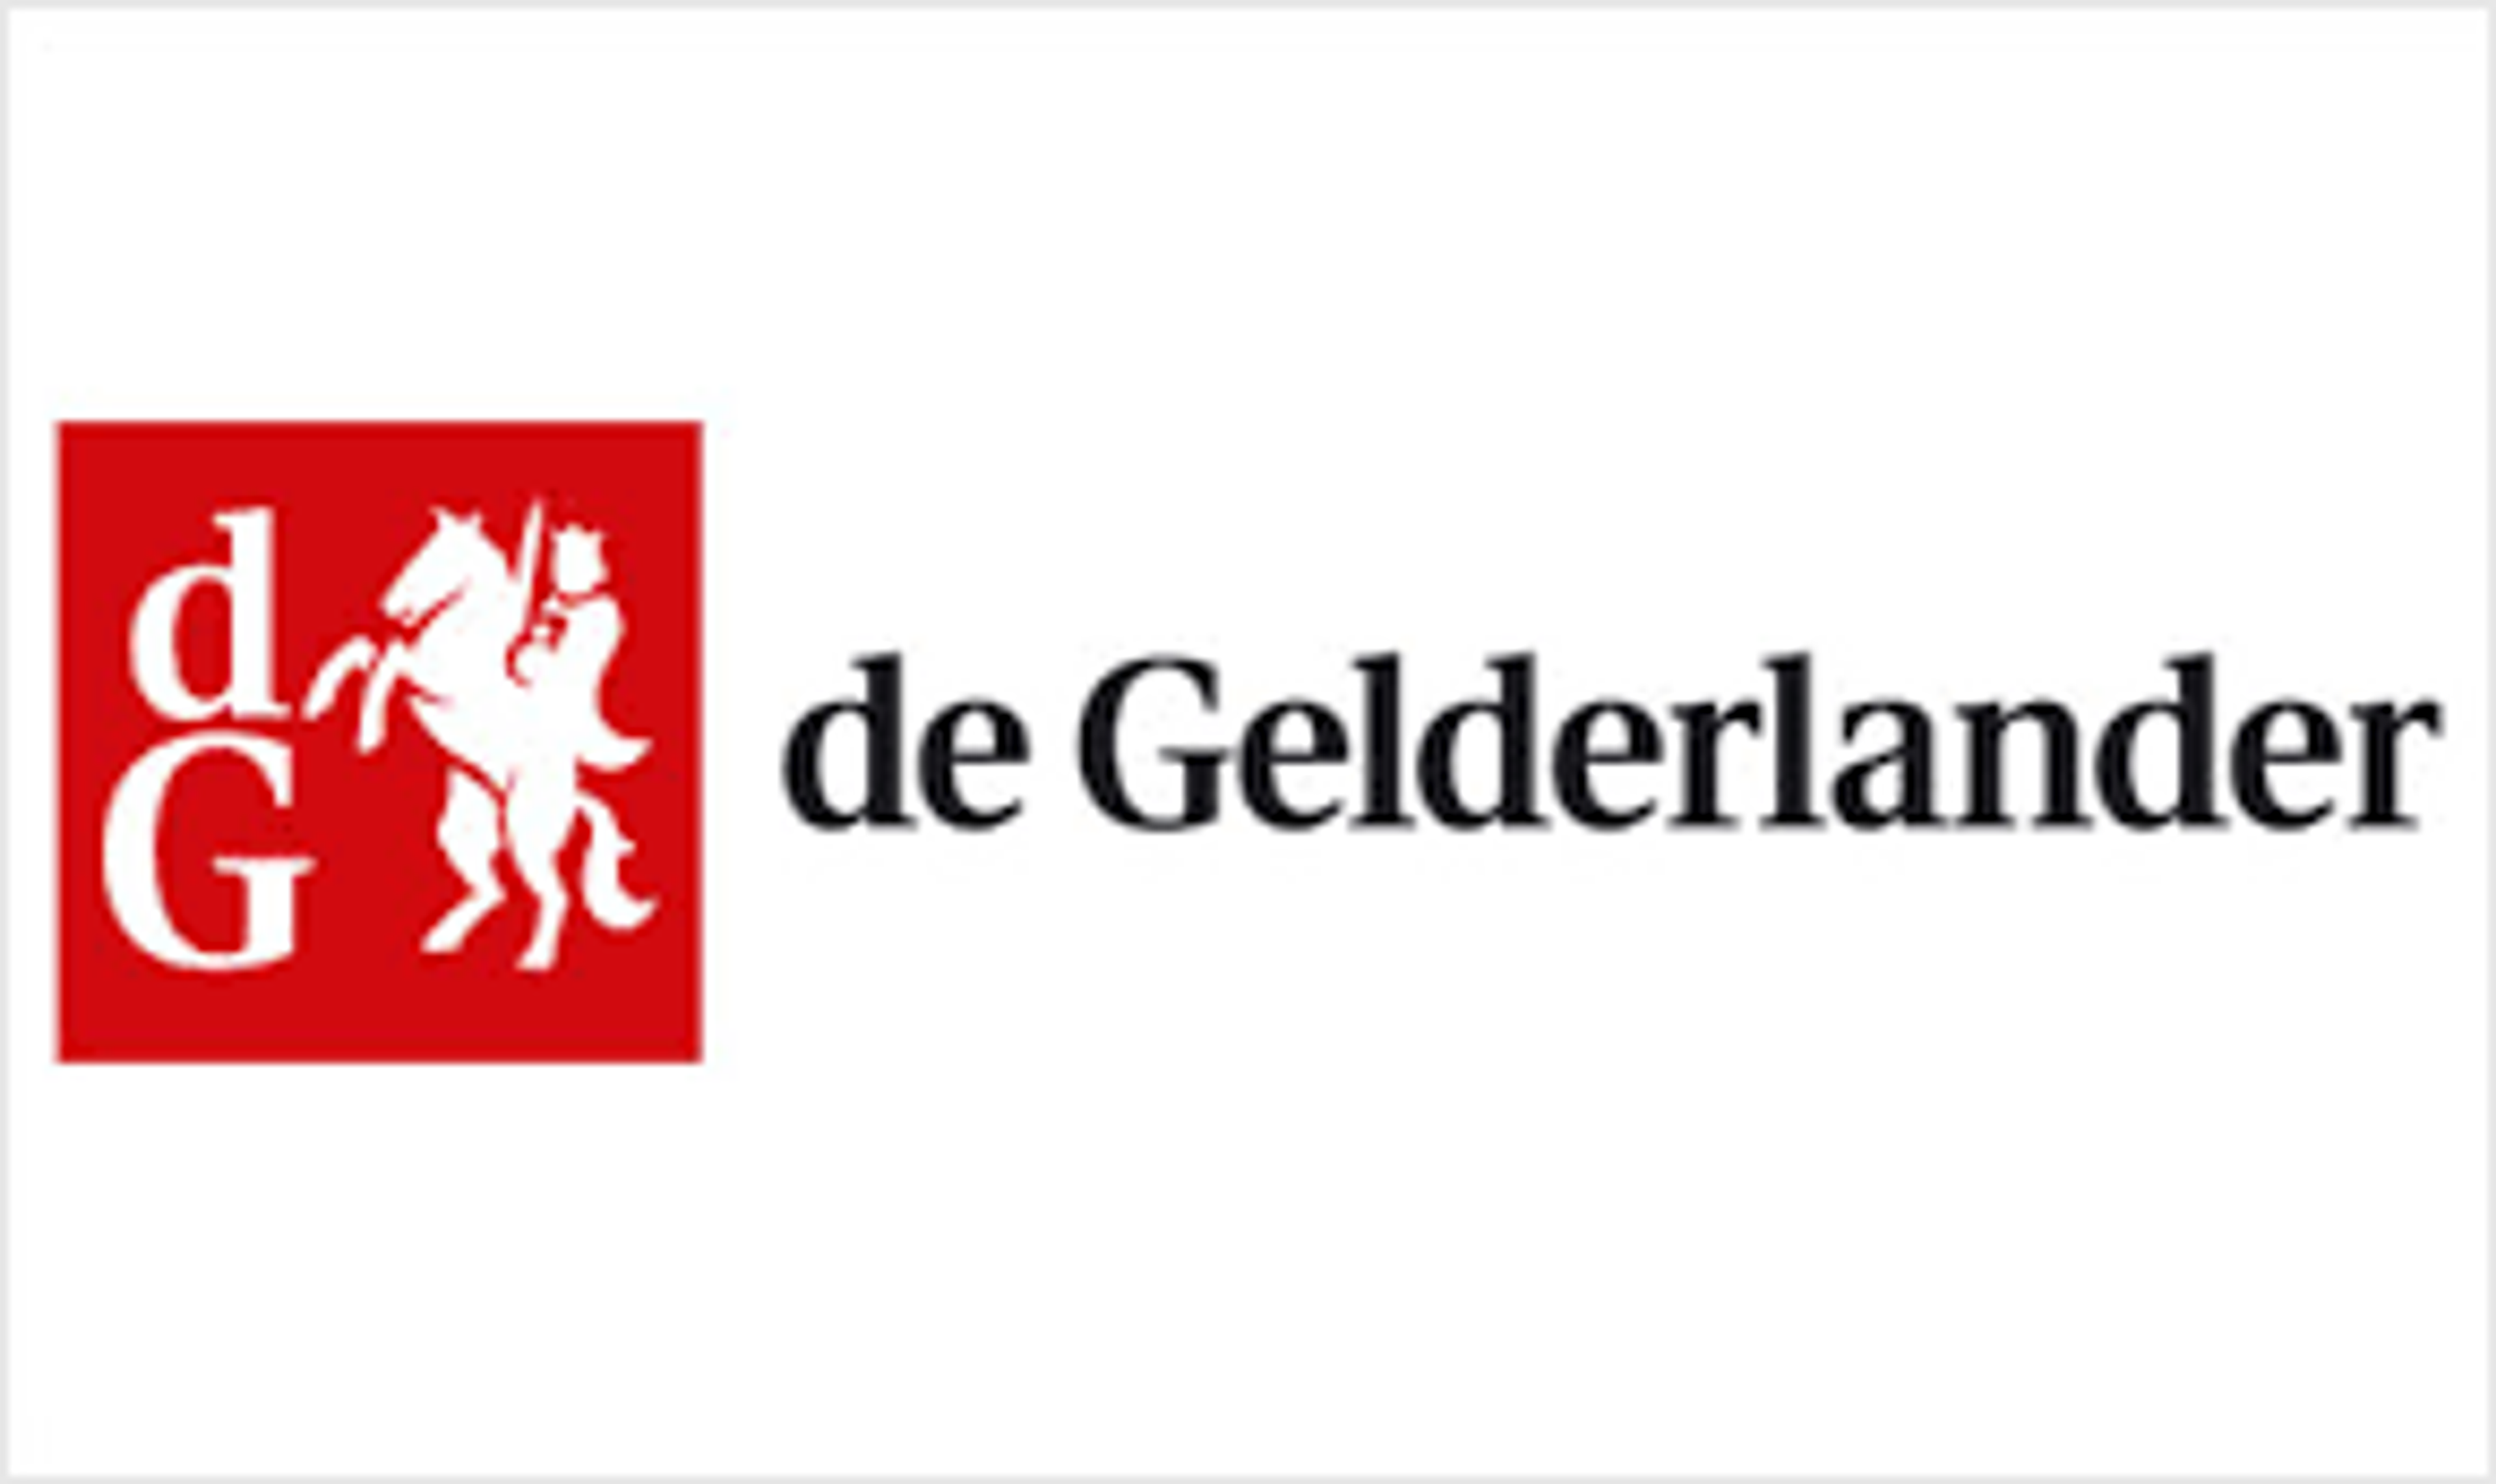 DPG Media portfoliowijziging dagbladen: edities De Gelderlander aangepast